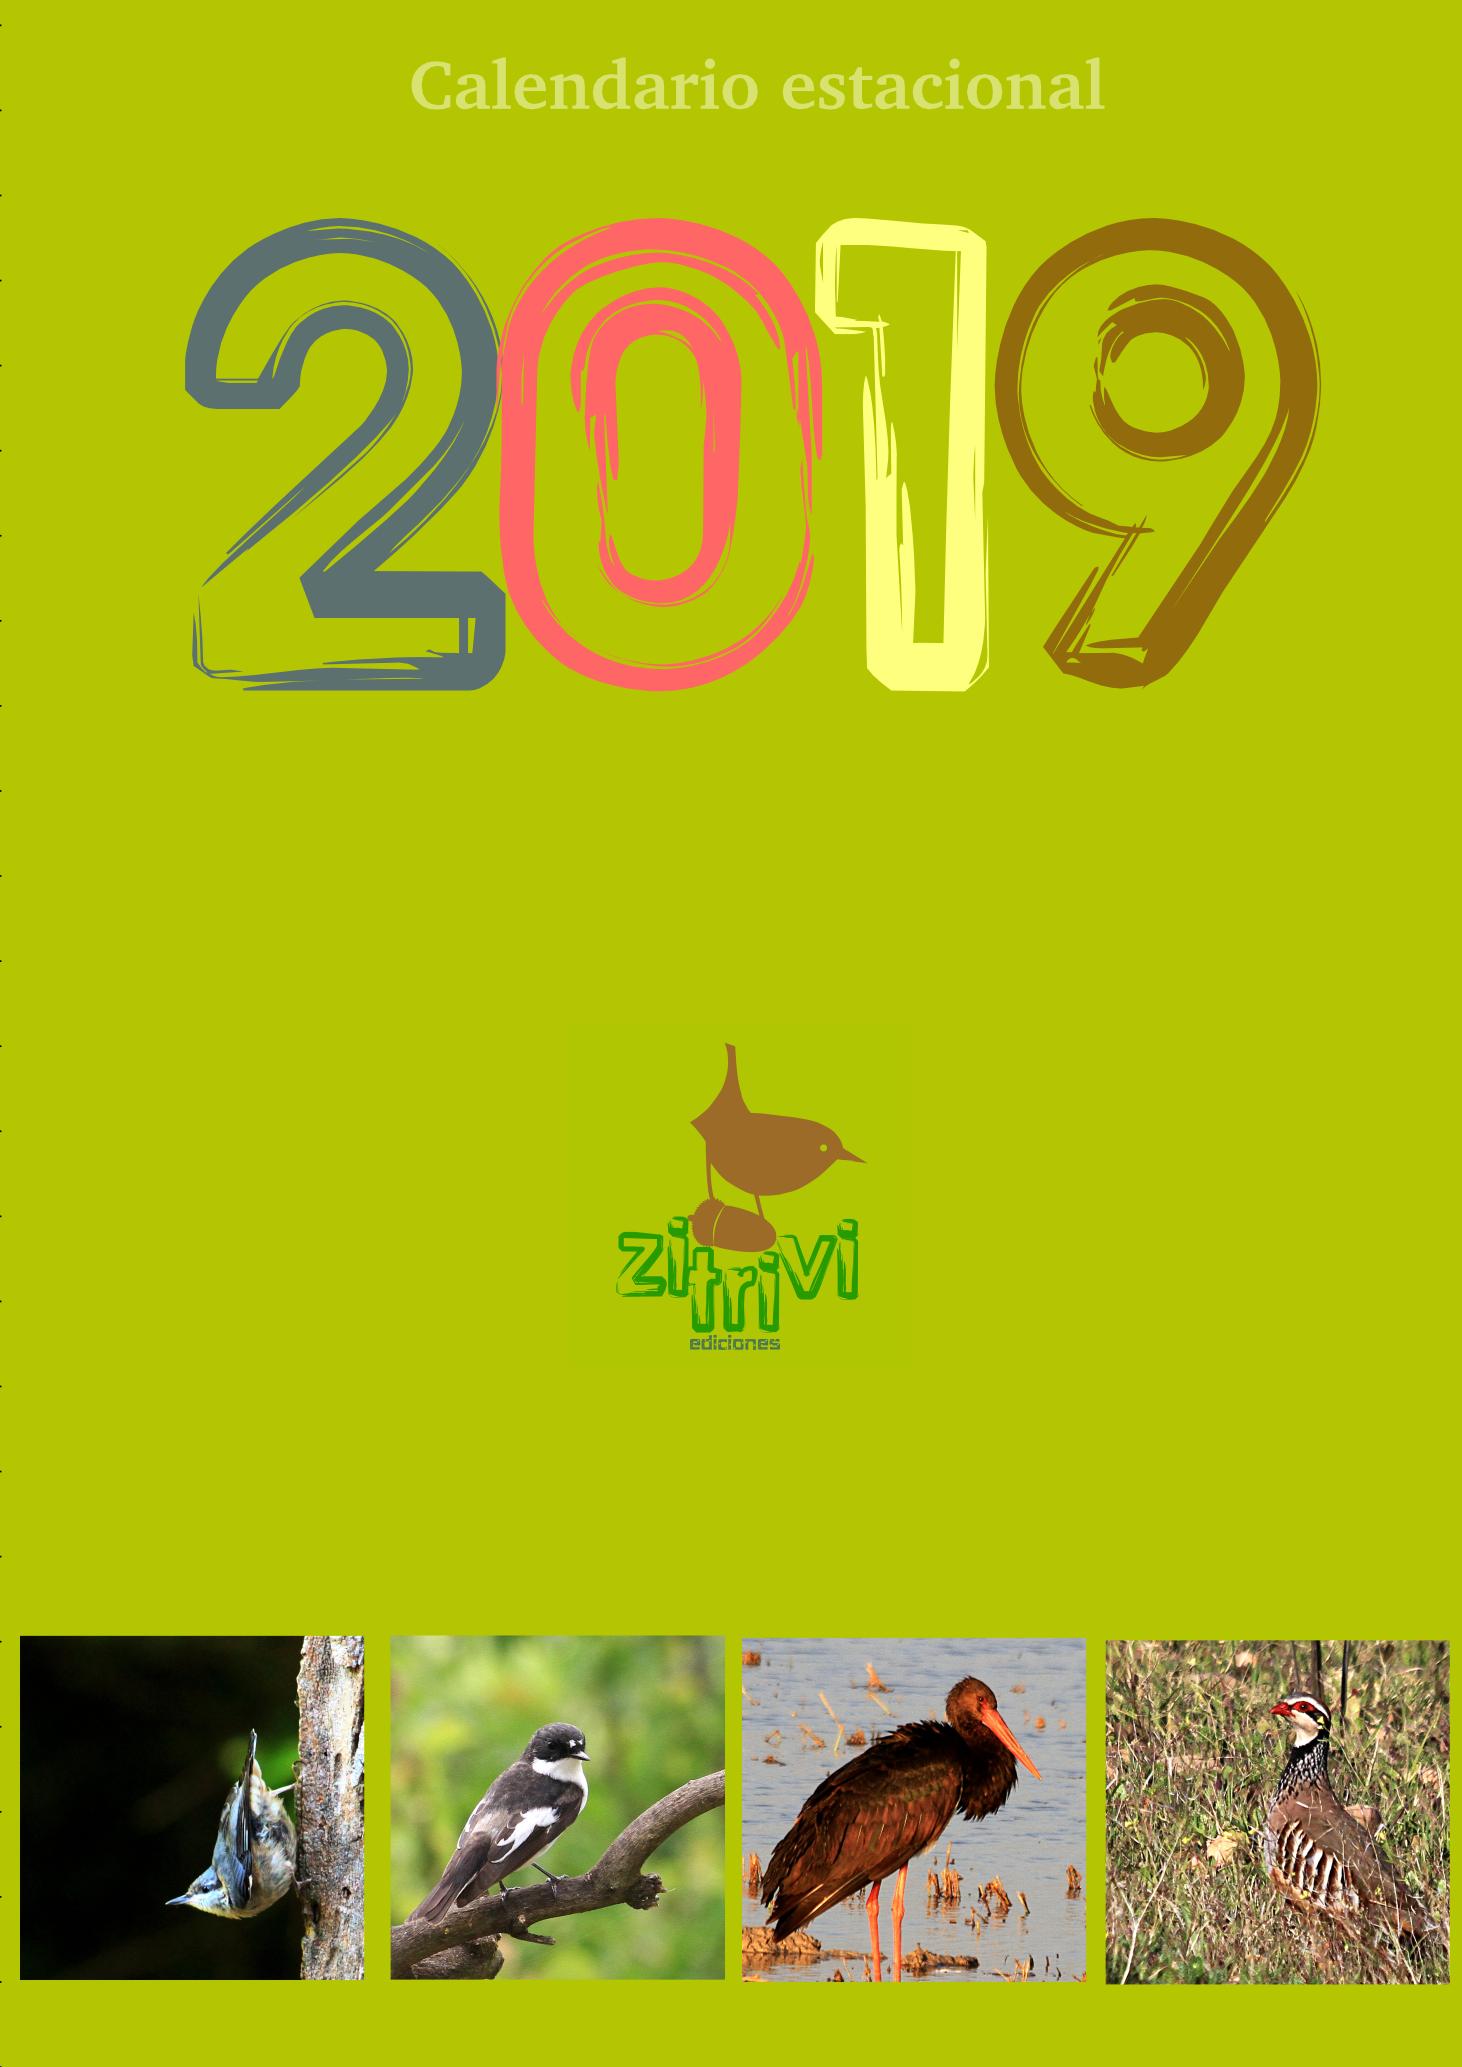 Seasonal calendar 2019